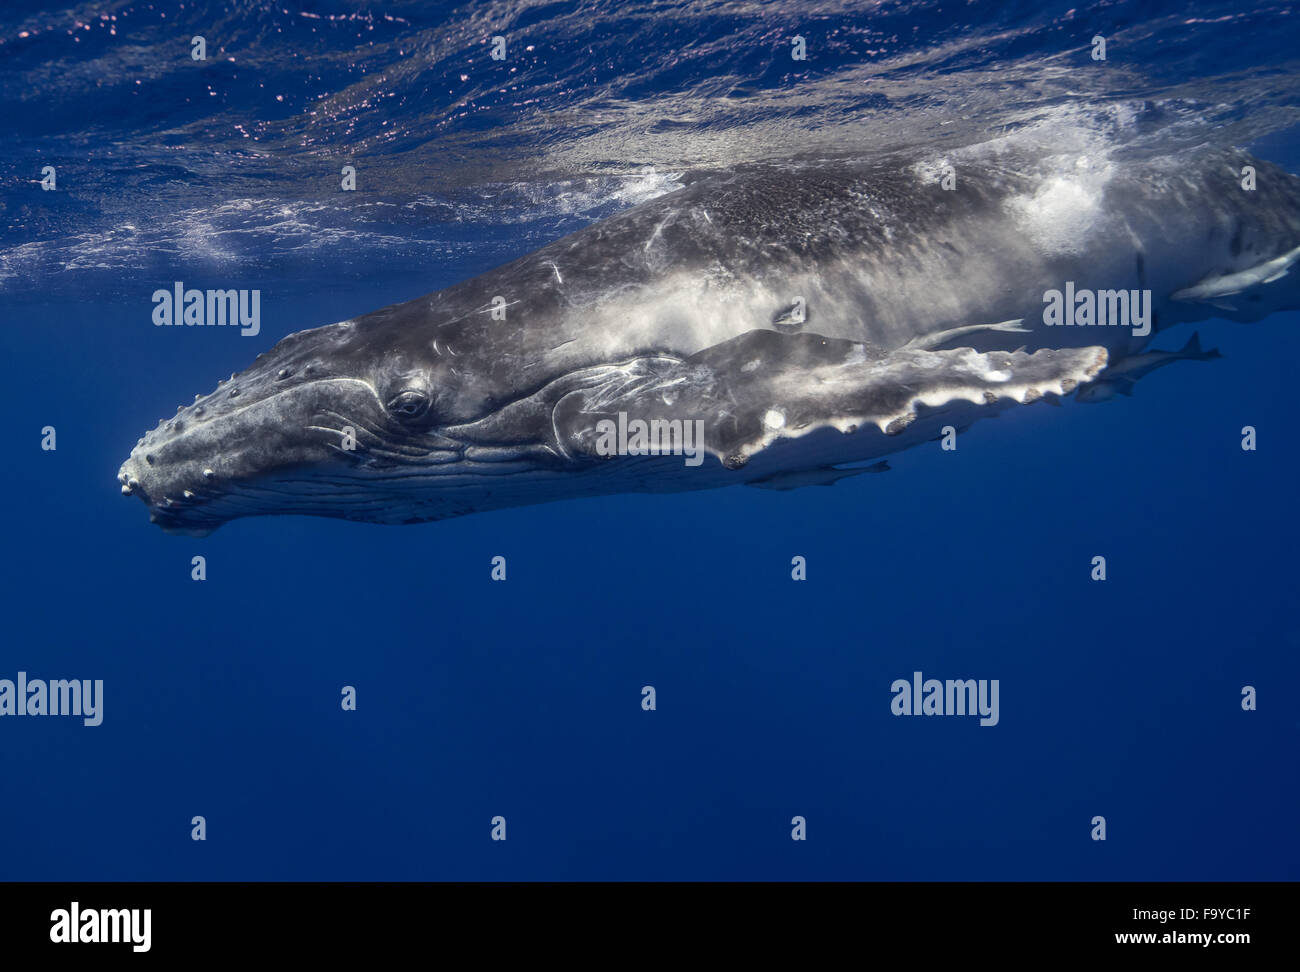 Humpback Whale calf, Vava'u, Tonga Stock Photo